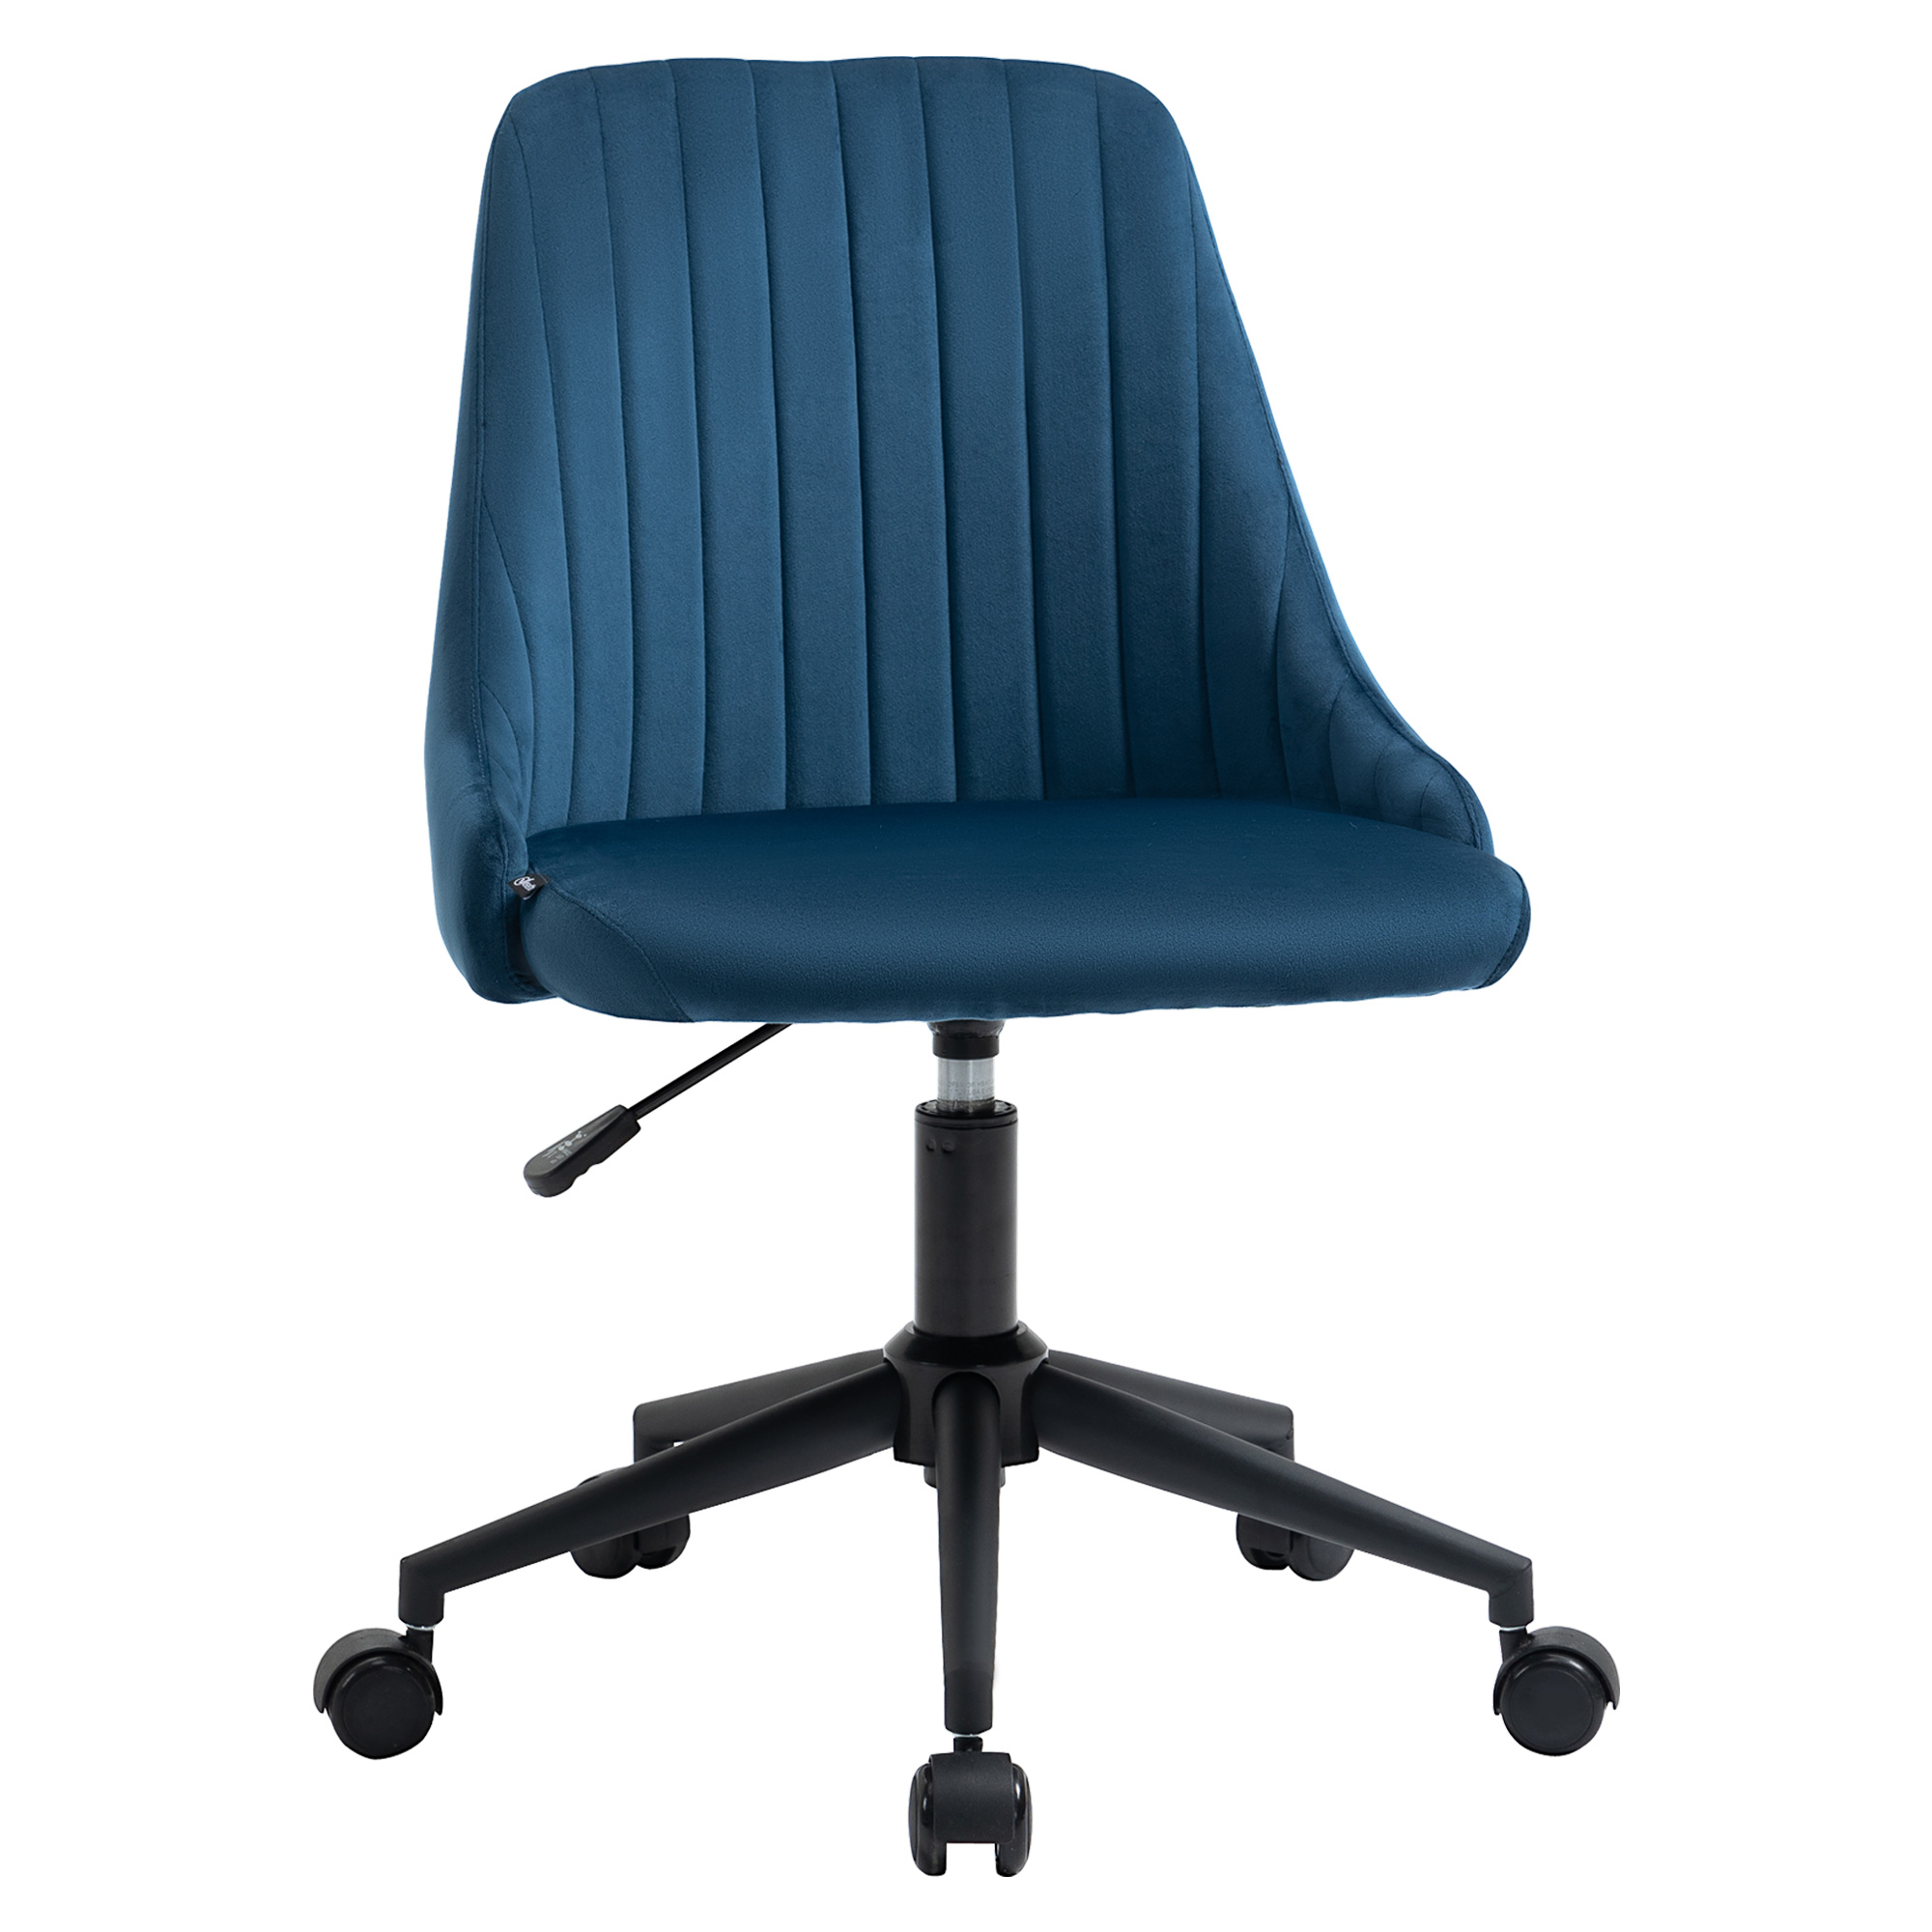 Περιστρεφόμενη Καρέκλα Γραφείου με Ρυθμιζόμενο Ύψος 50 x 58 x 77-85 cm Χρώματος Μπλε Vinsetto 921-488BU